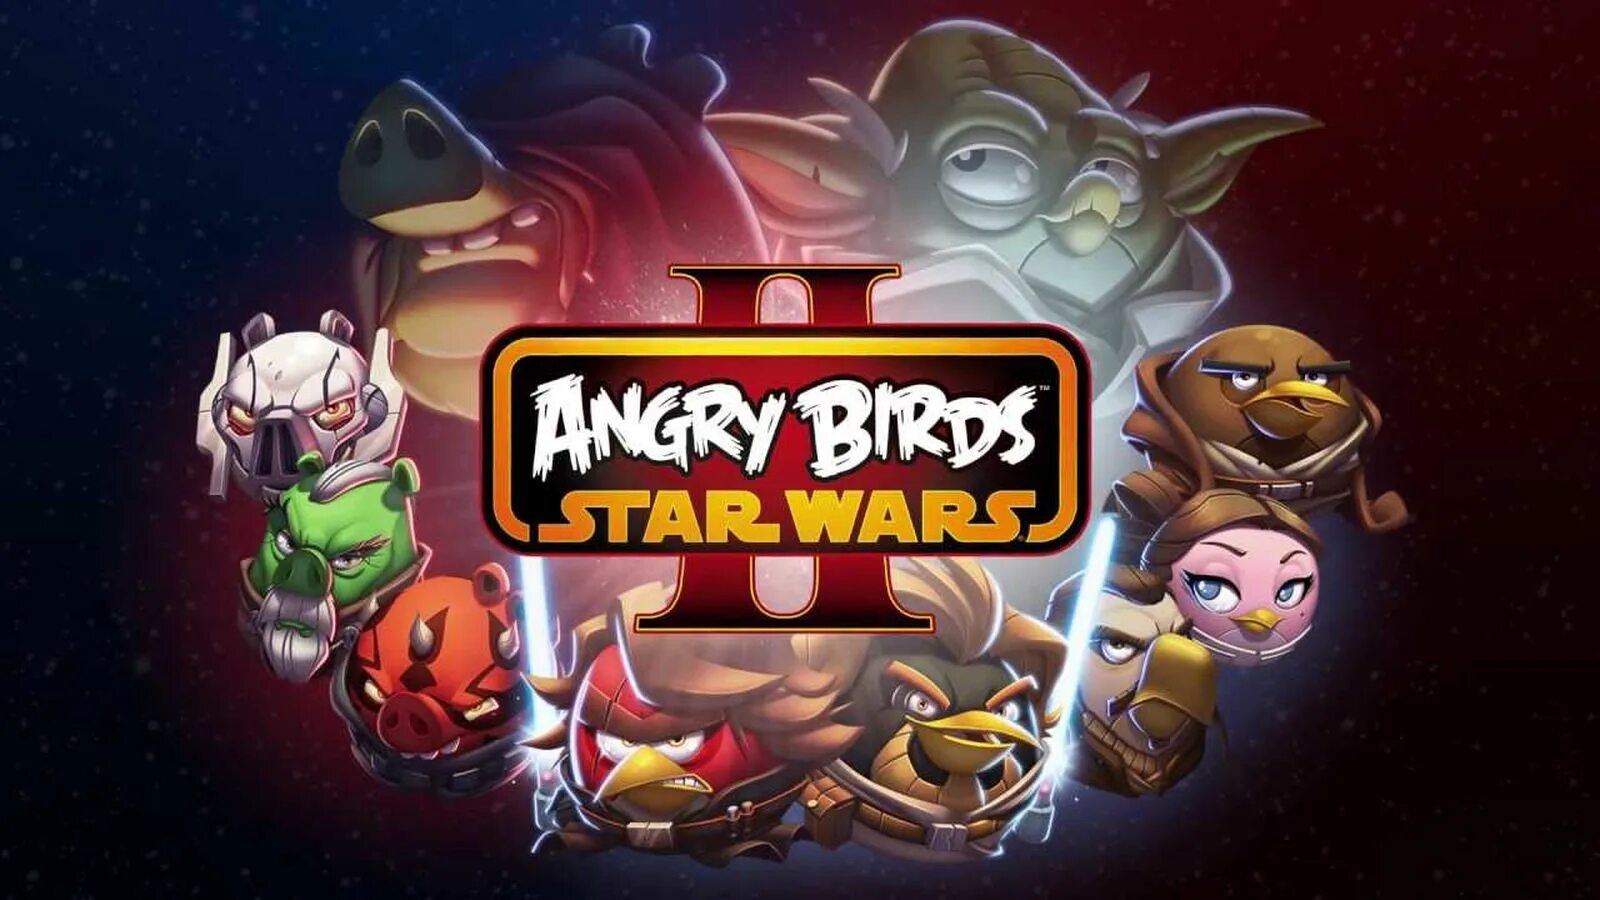 Энгрибёрдцзвёздные войны 2. Игра Angry Birds Star Wars 3. Звездные войны Энгри Бердс Стар ВАРС 2. Игра Angry Birds Star Wars 2. Angry birds 2 деньги